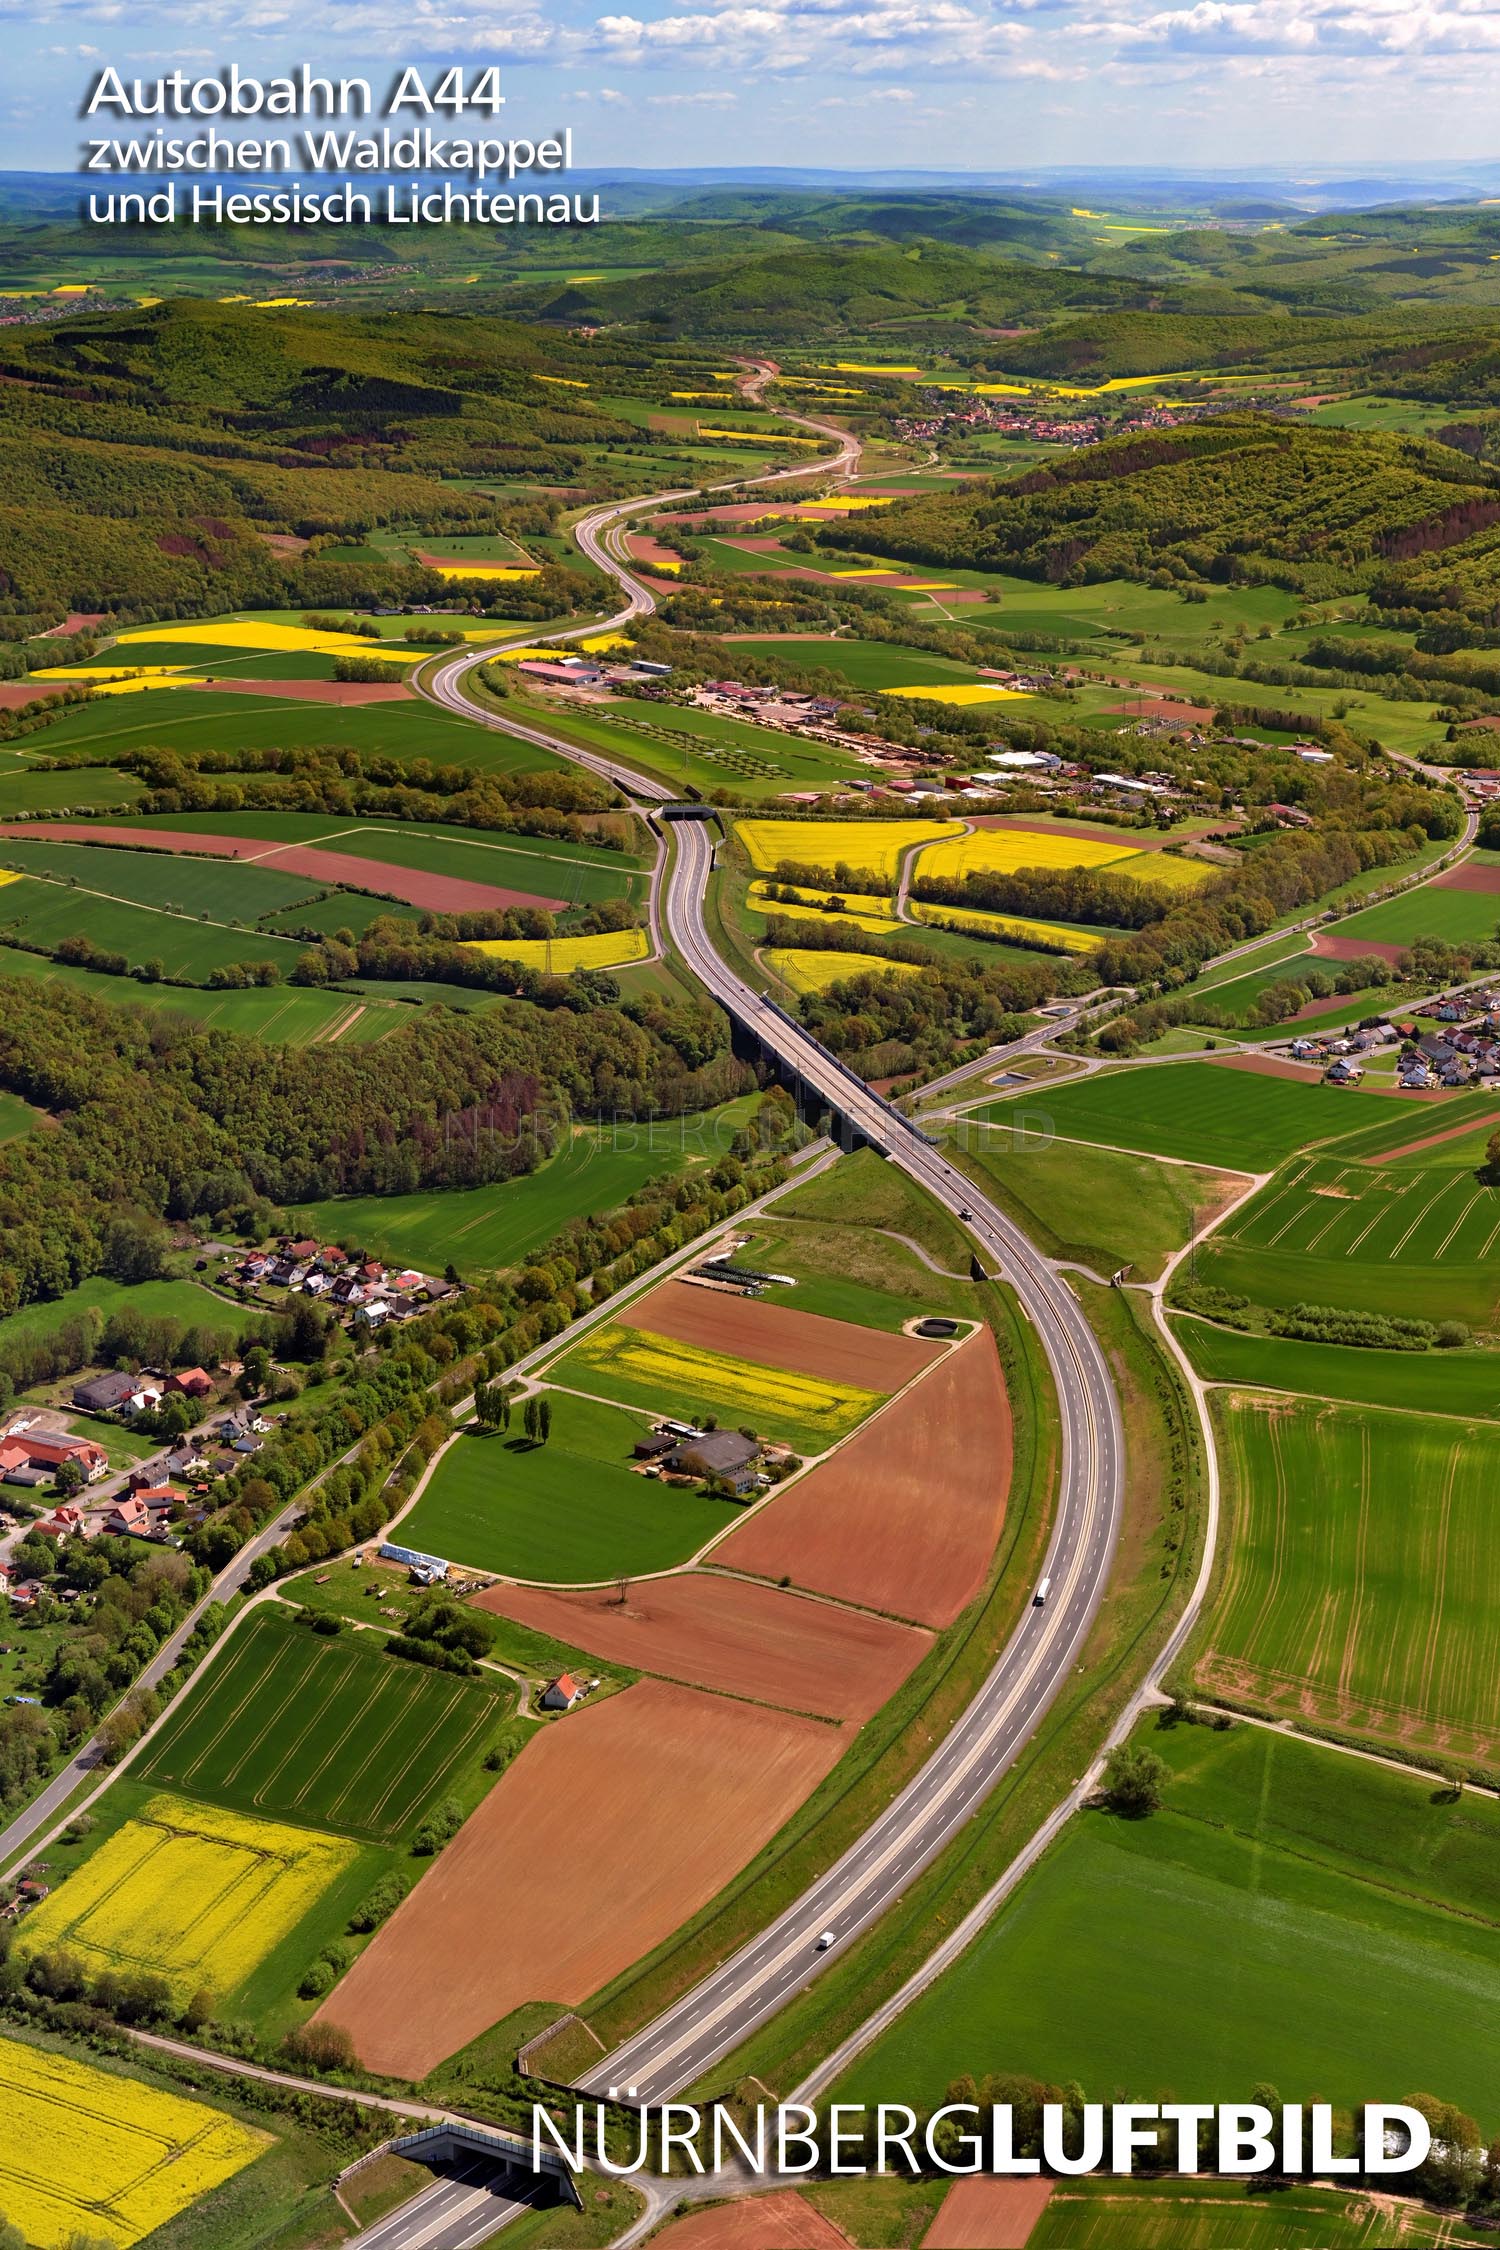 Autobahn A44 zwischen Waldkappel und Hessisch Lichtenau